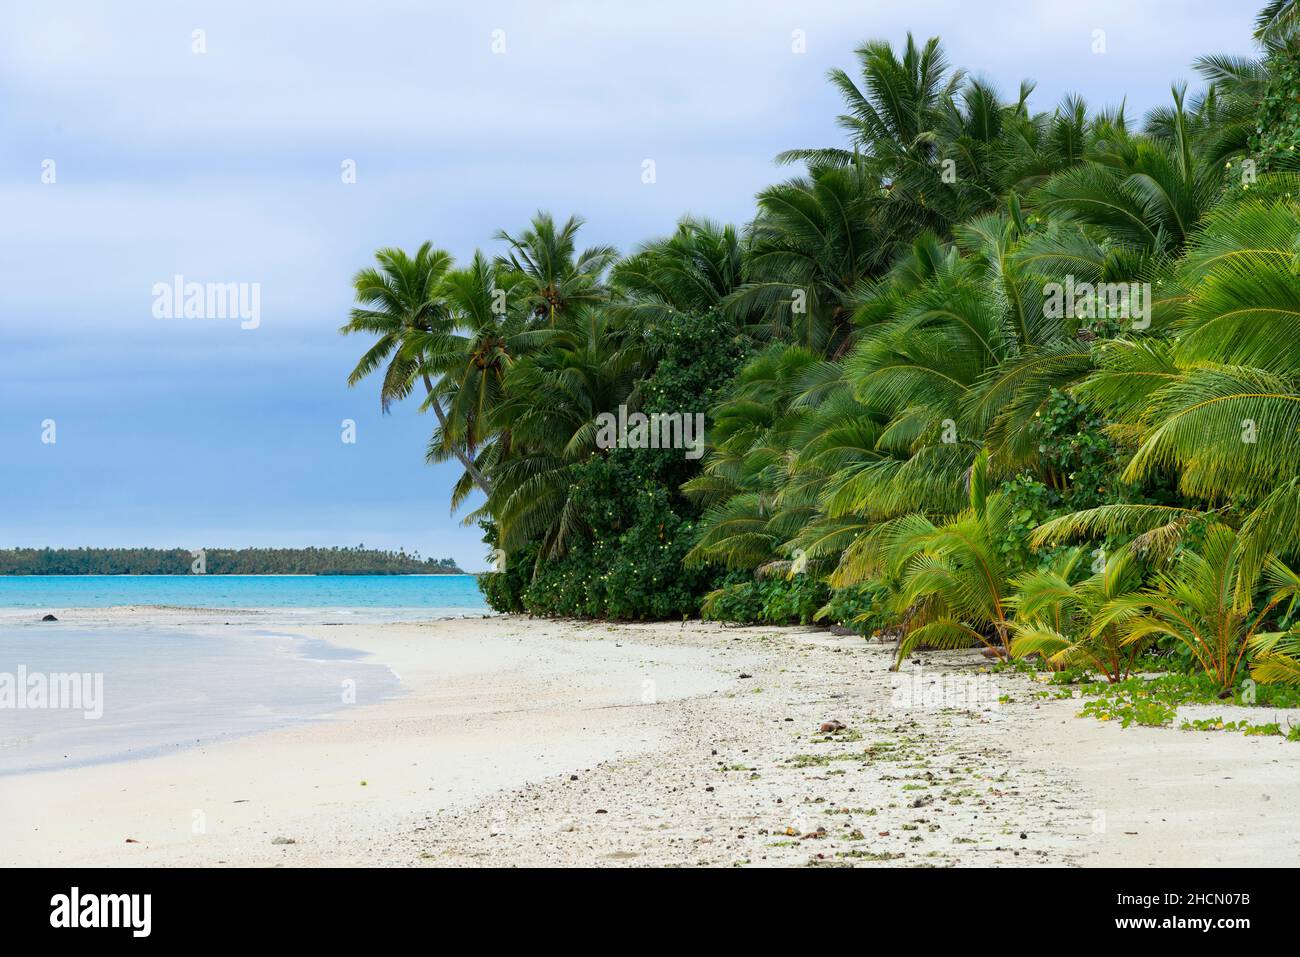 La belle plage et mer turquoise sur une île de pied à une courte distance de Aitutaki une des îles Cook, Pacifique Sud Banque D'Images